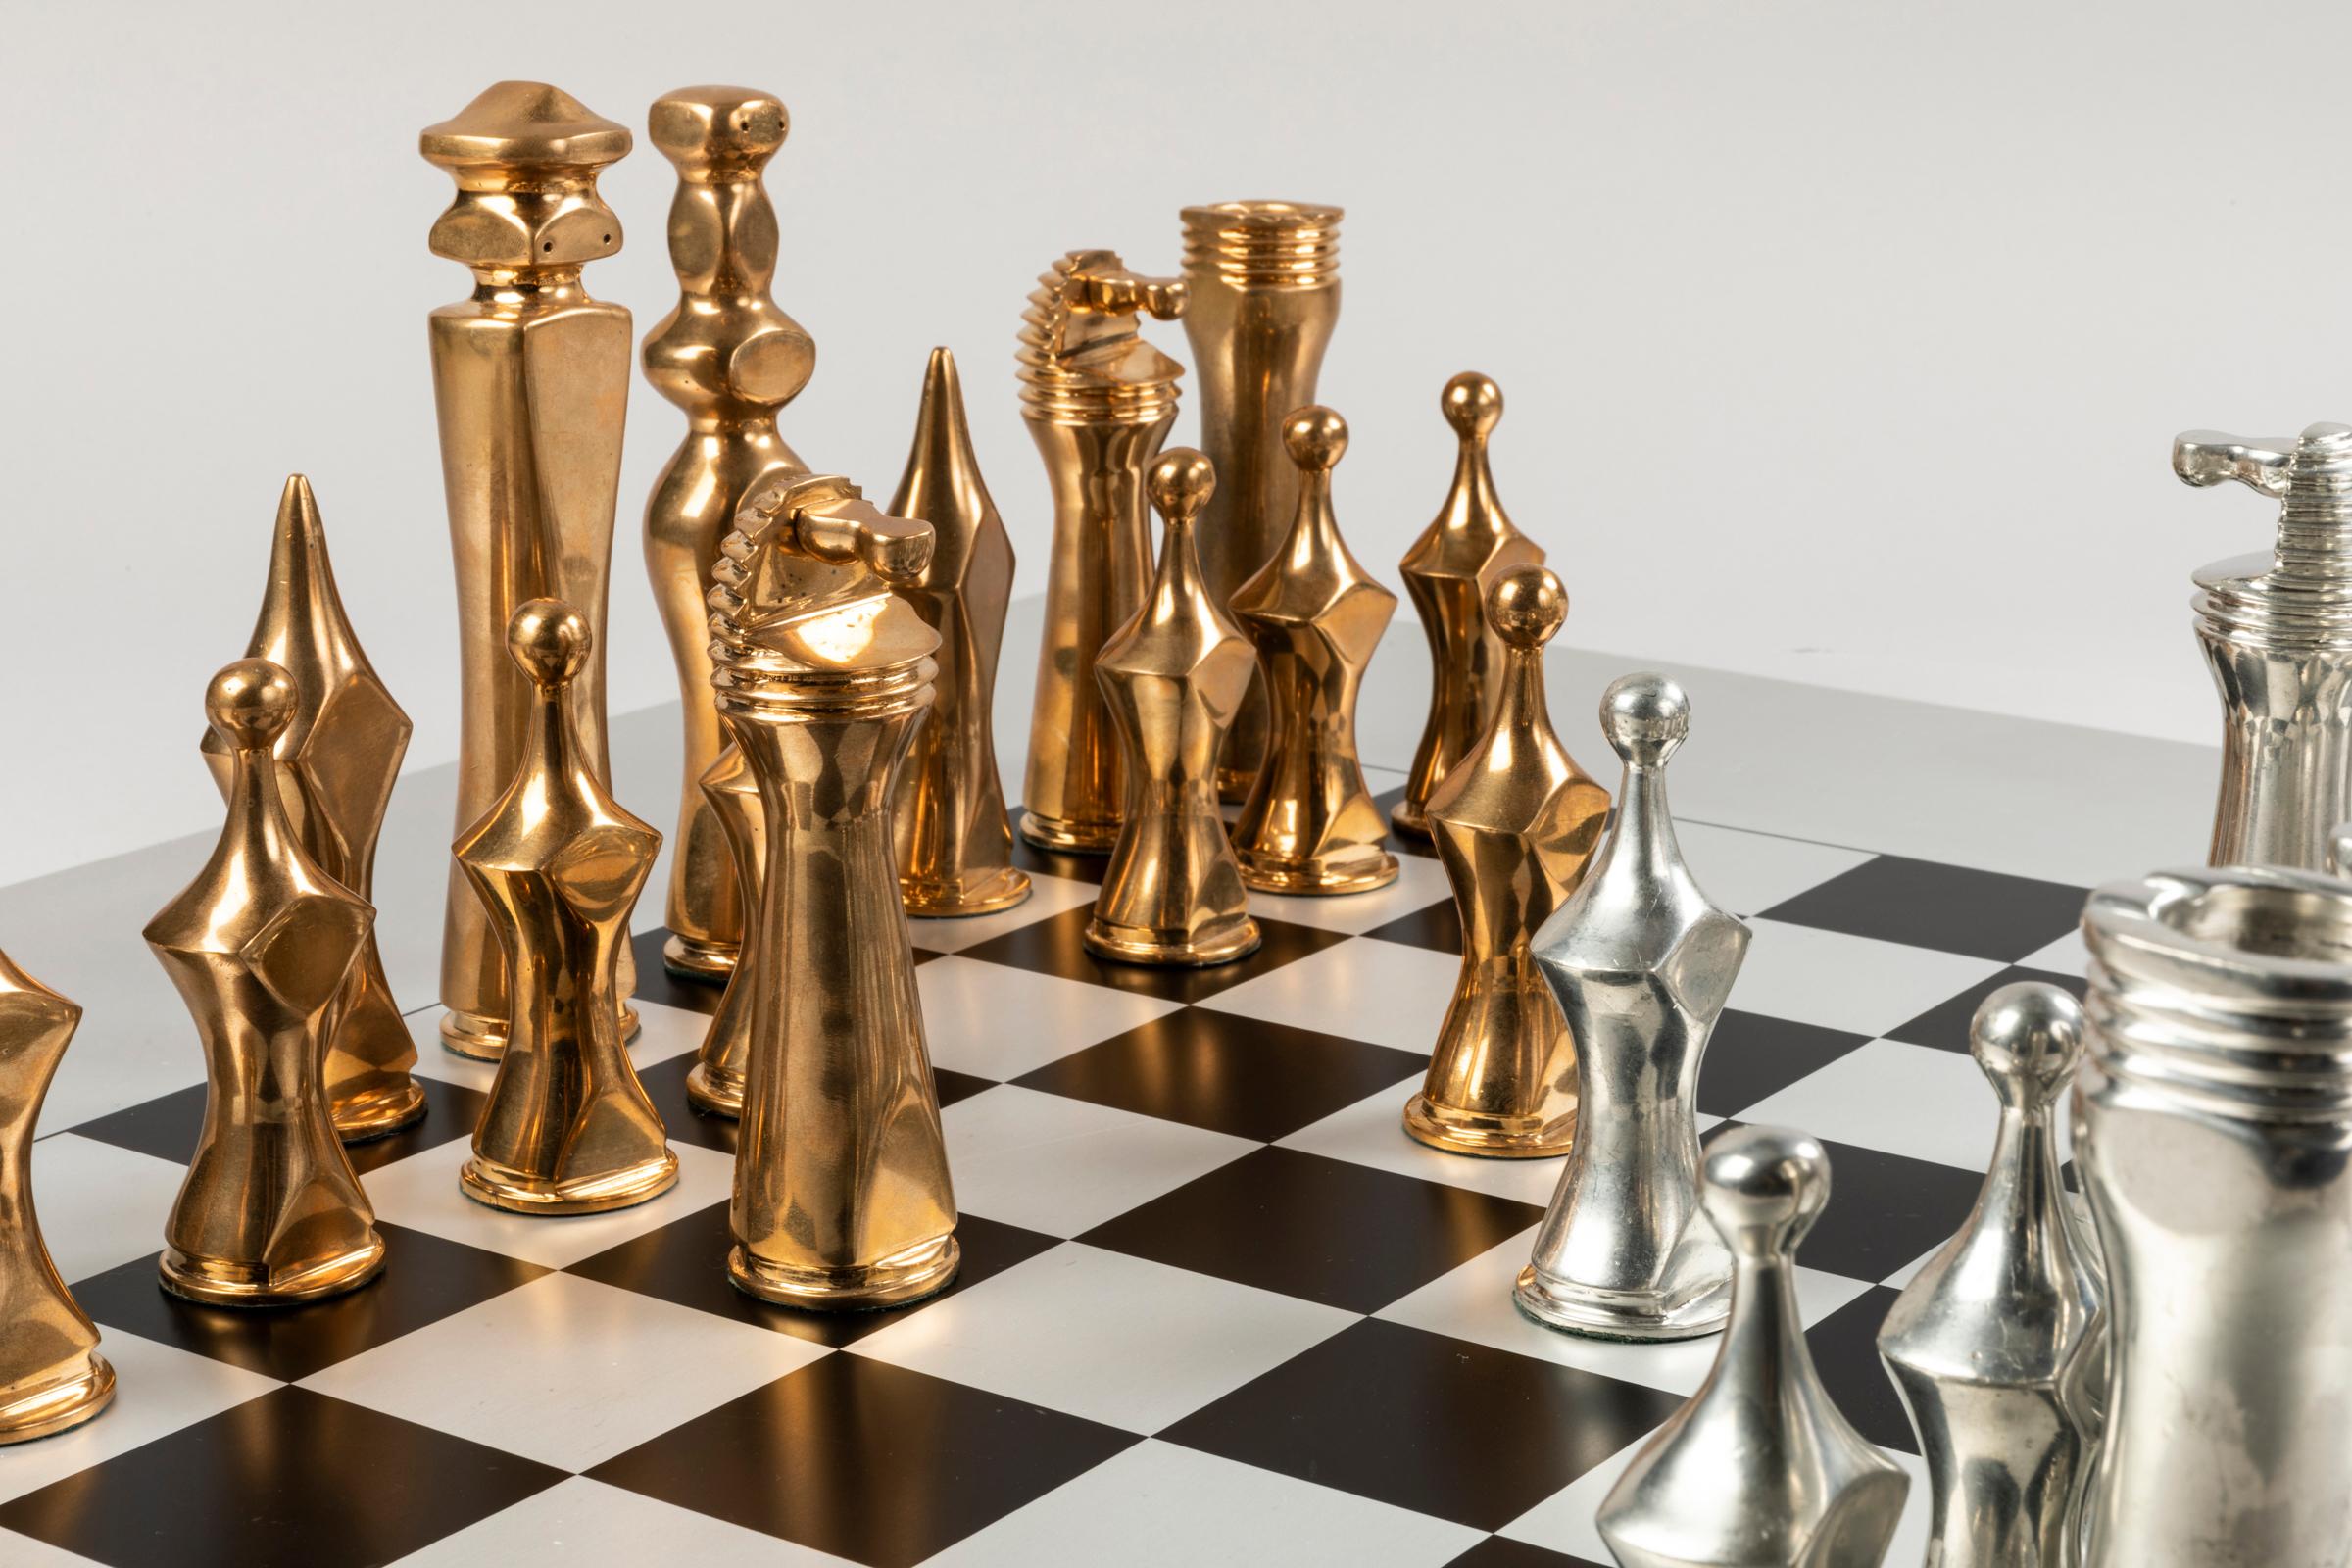 Italian Giorgio Amelio Roccamonte Magnificient Chessboard with Bronze Figures, 1970s